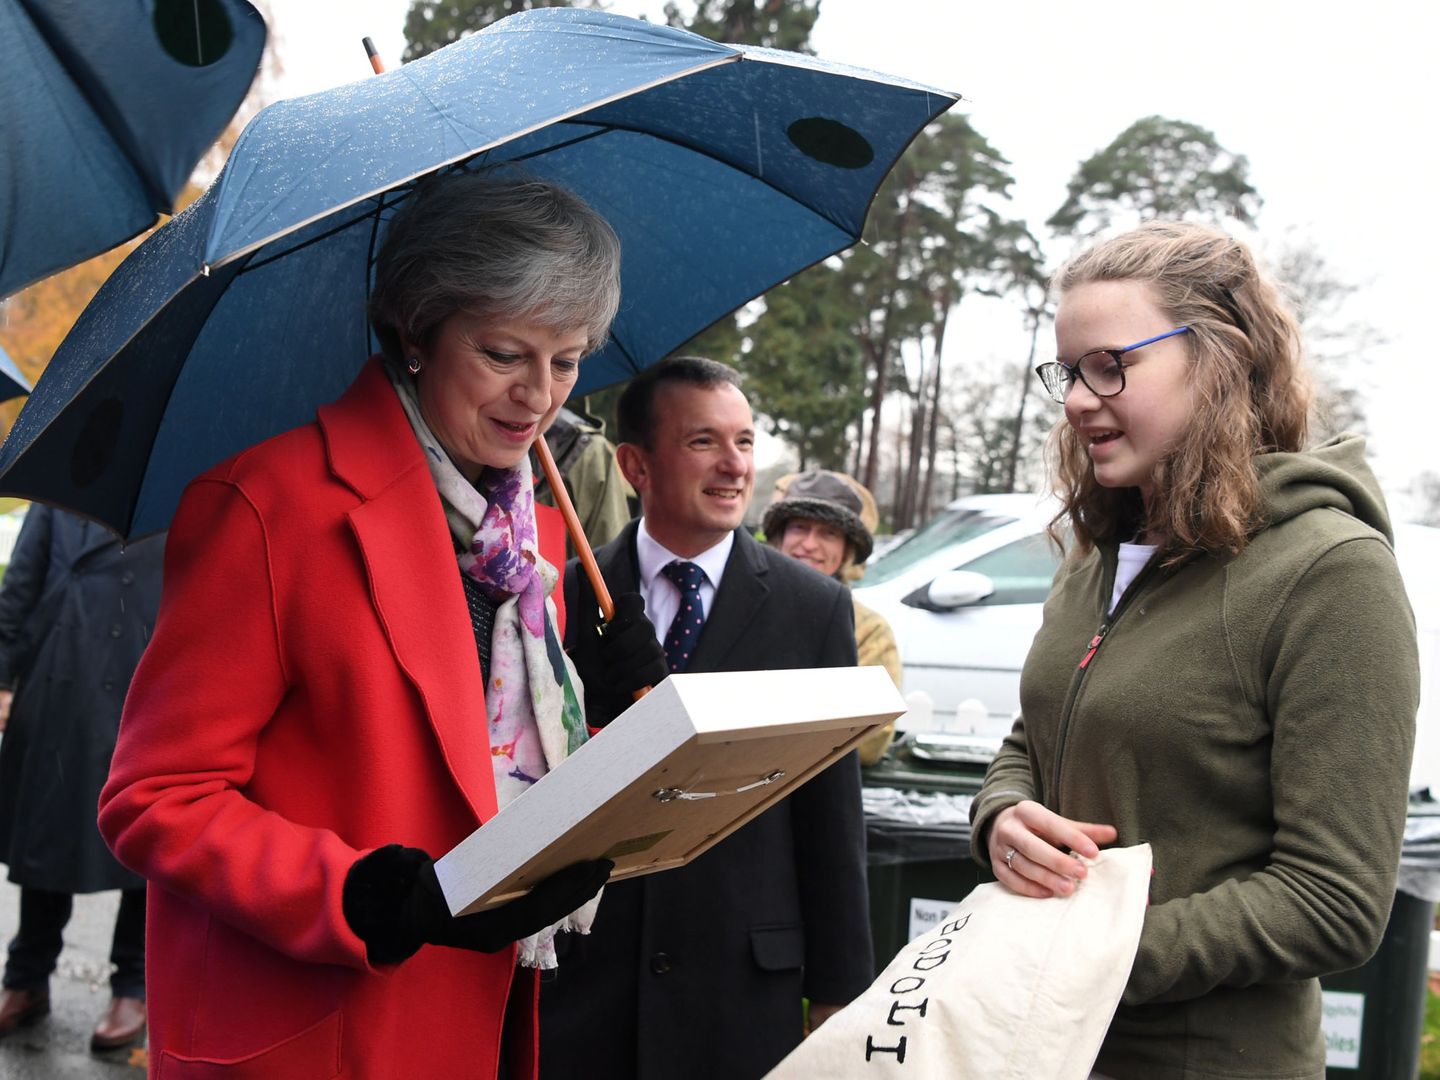 La primera ministra británcia Theresa May durante una visita a una feria de invierno en Gales, el 27 de noviembre de 2018. (Reuters)